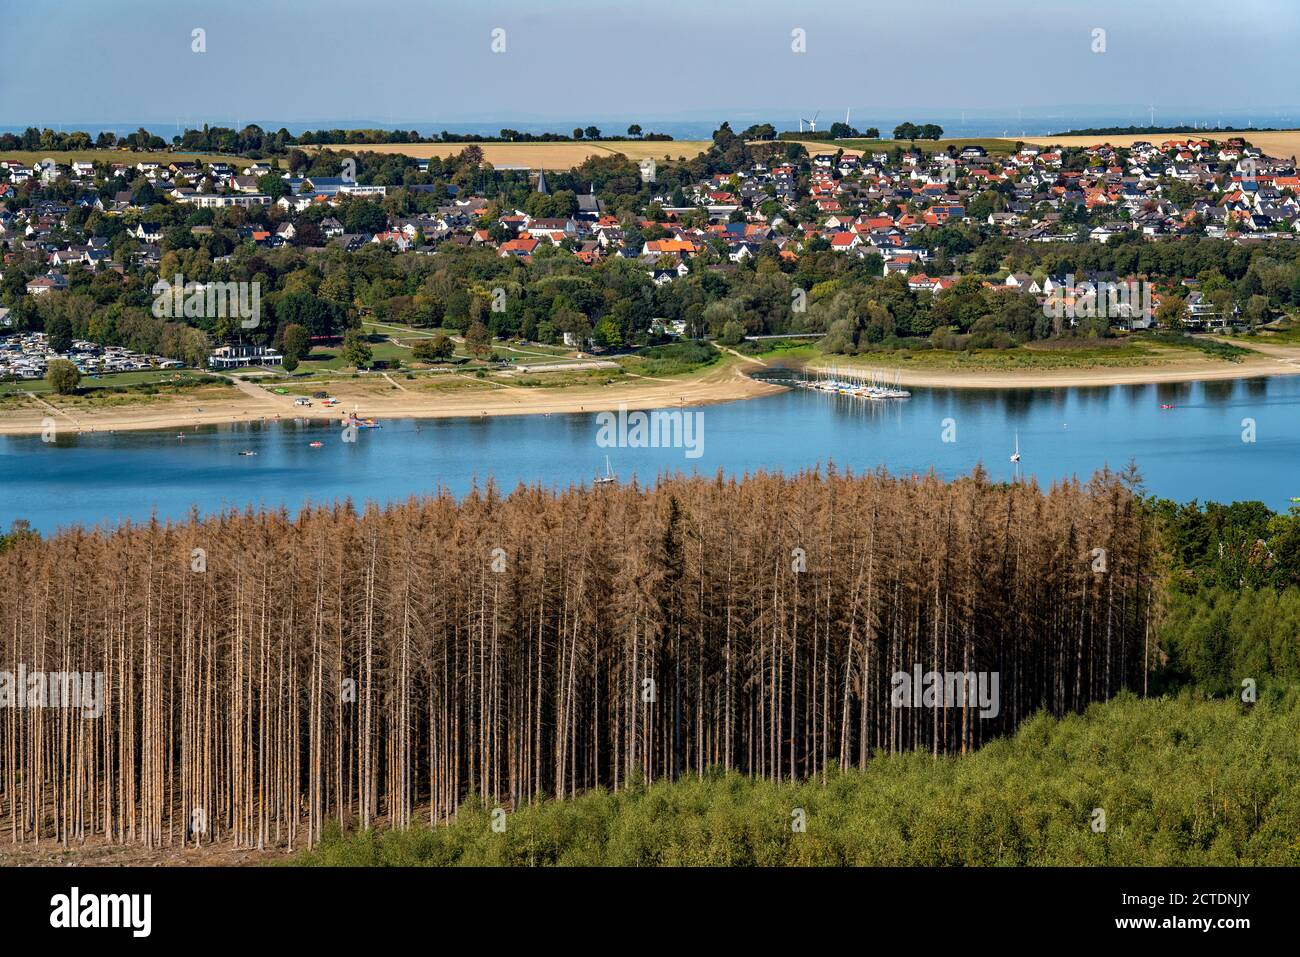 Waldsterben im Arnsberger Wald, nördliches Sauerland, abgestorbene Fichten Bäume, teils gerodeter Wald, am Möhnesee,  NRW, Deutschland, Stock Photo